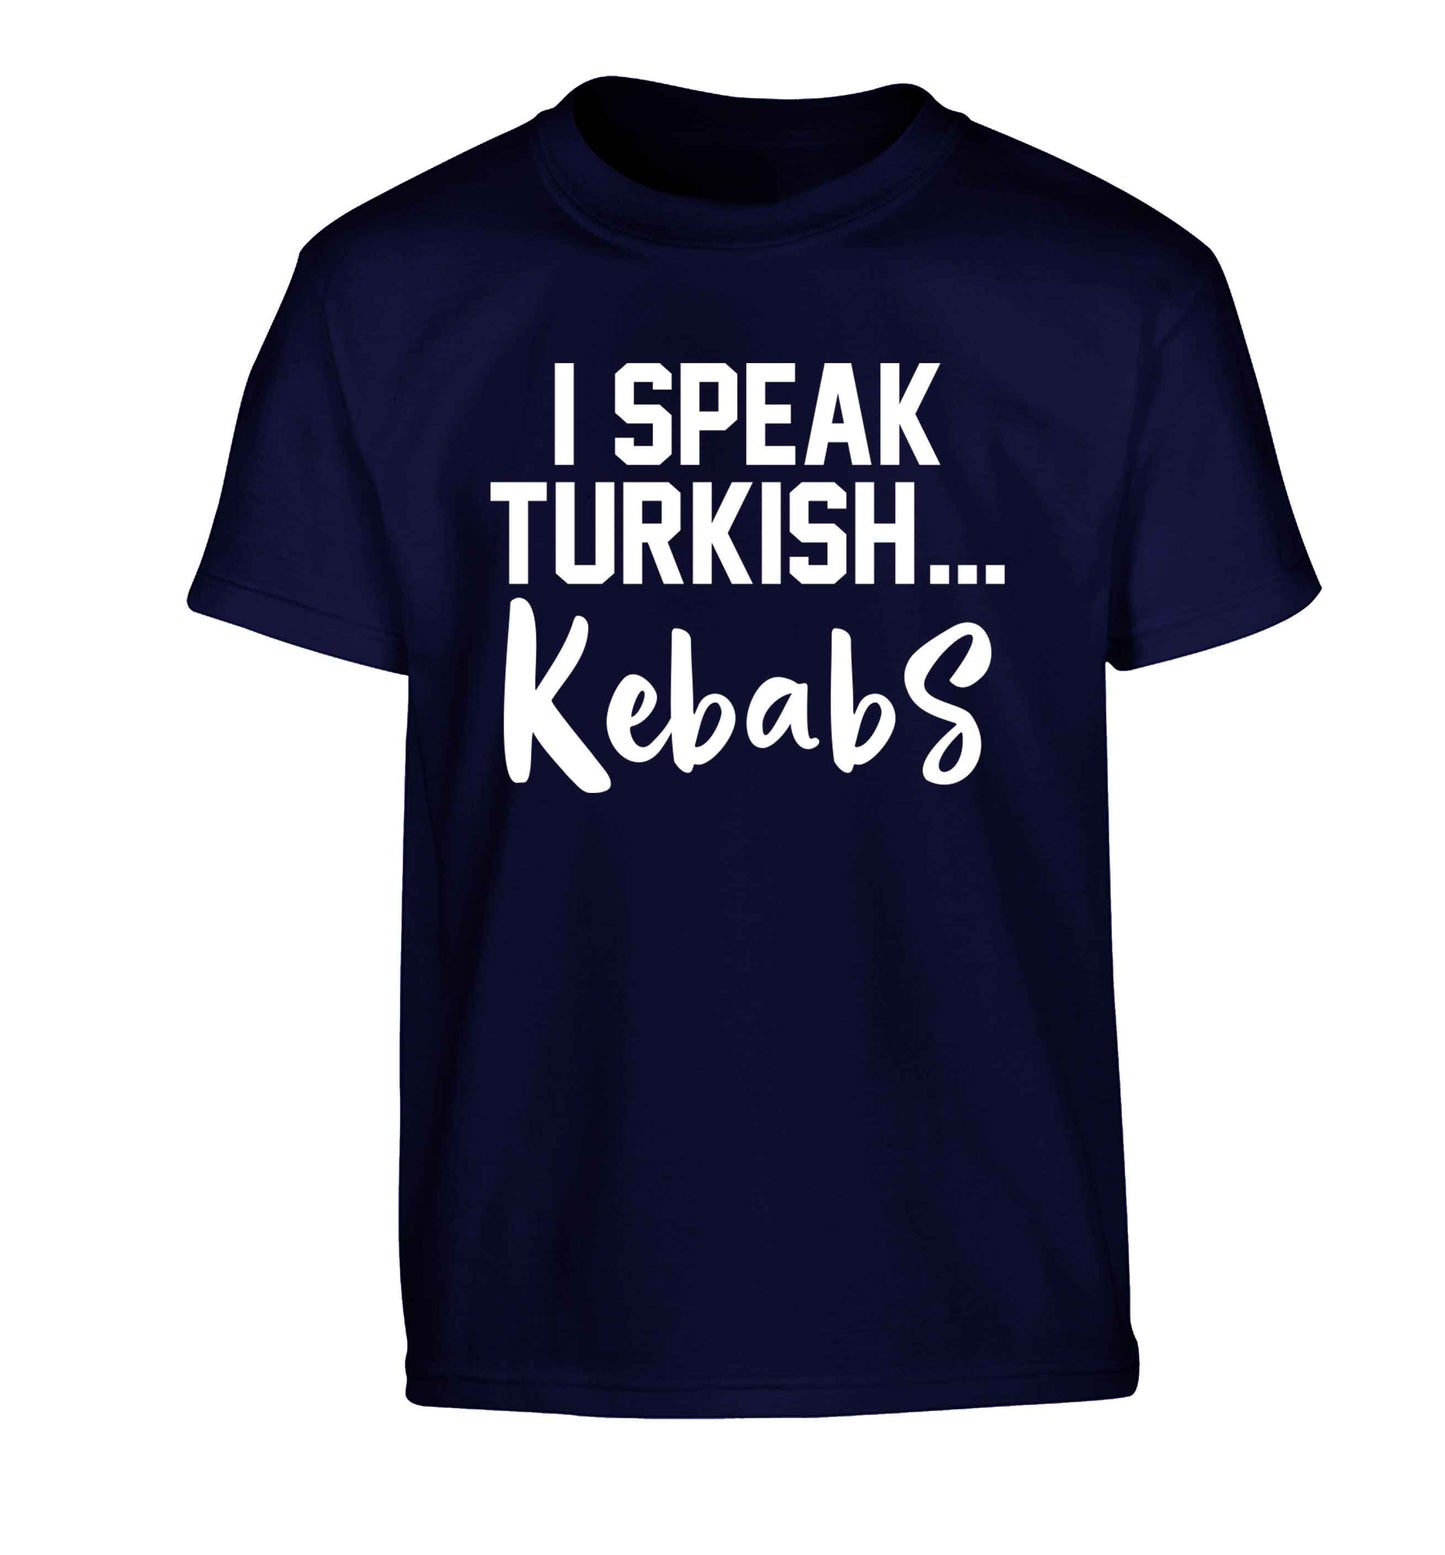 I speak Turkish...kebabs Children's navy Tshirt 12-13 Years